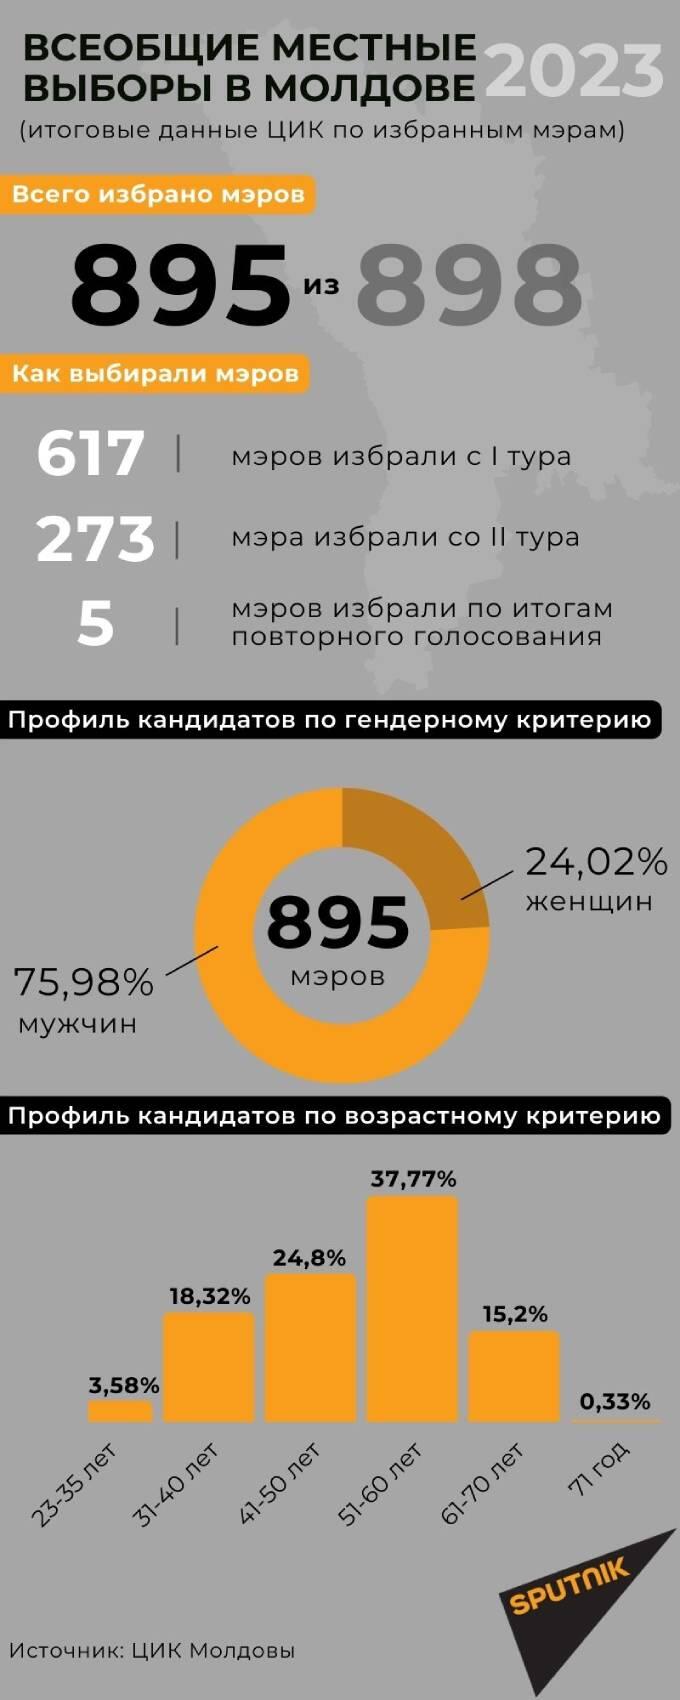 Профиль избранных мэров - Sputnik Молдова